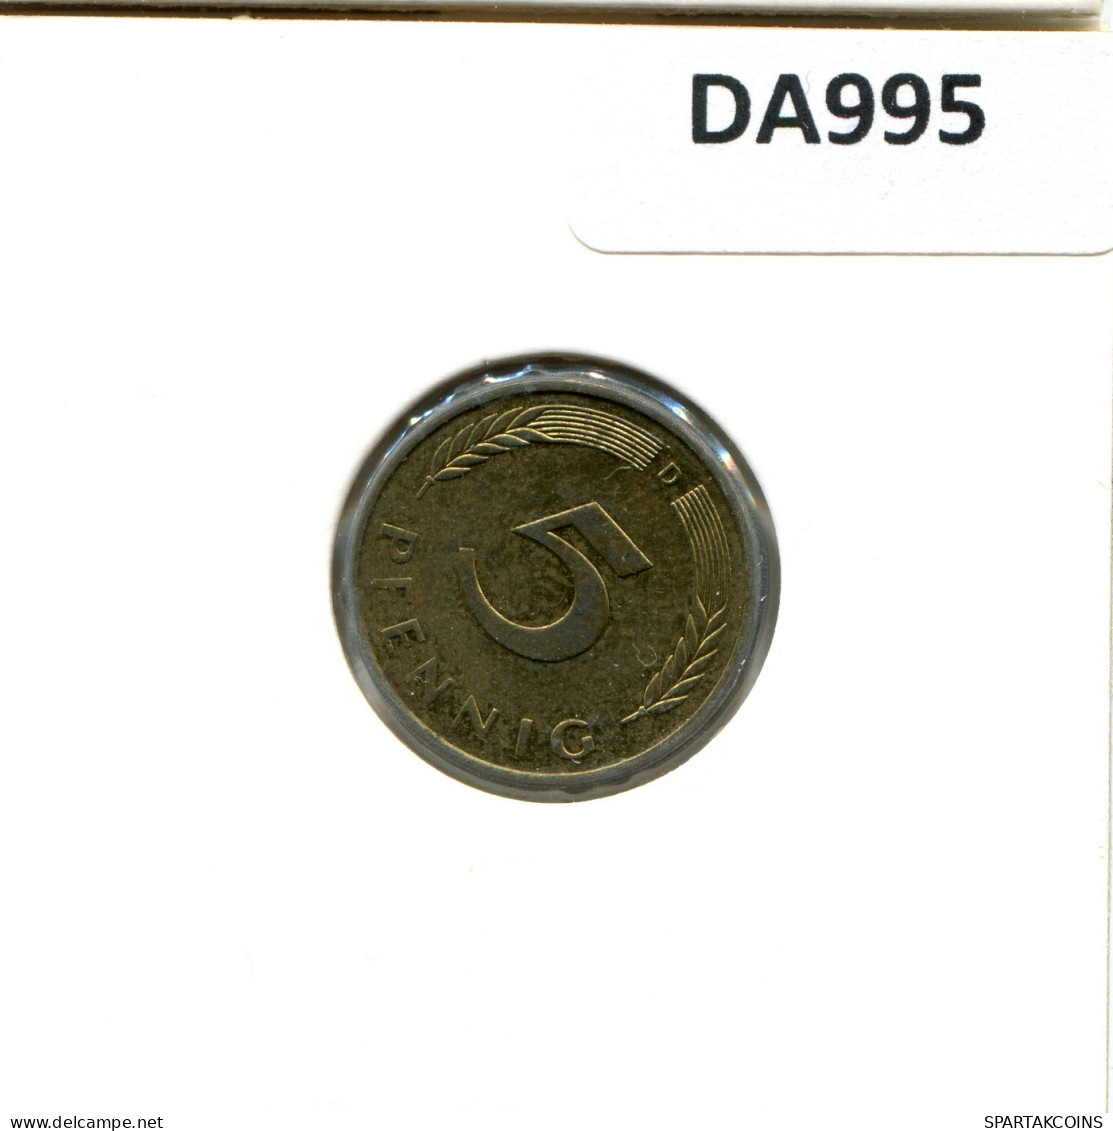 5 PFENNIG 1989 D WEST & UNIFIED GERMANY Coin #DA995.U - 5 Pfennig